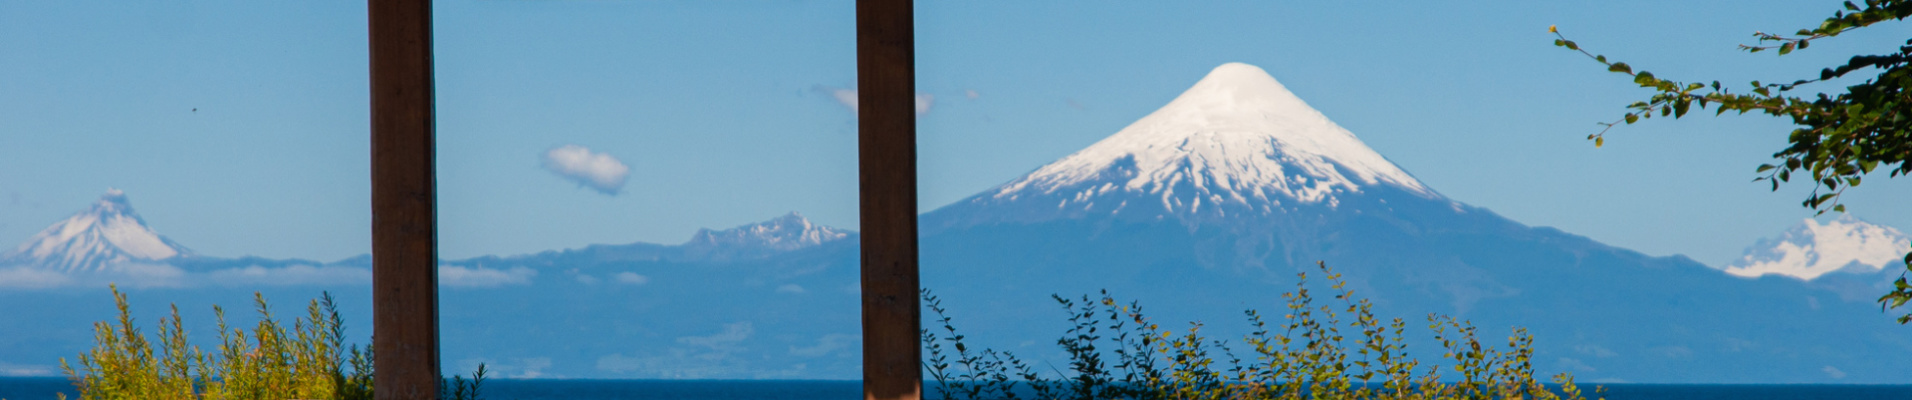 Volcans Osorno, Calbuco et Villarica, Chile